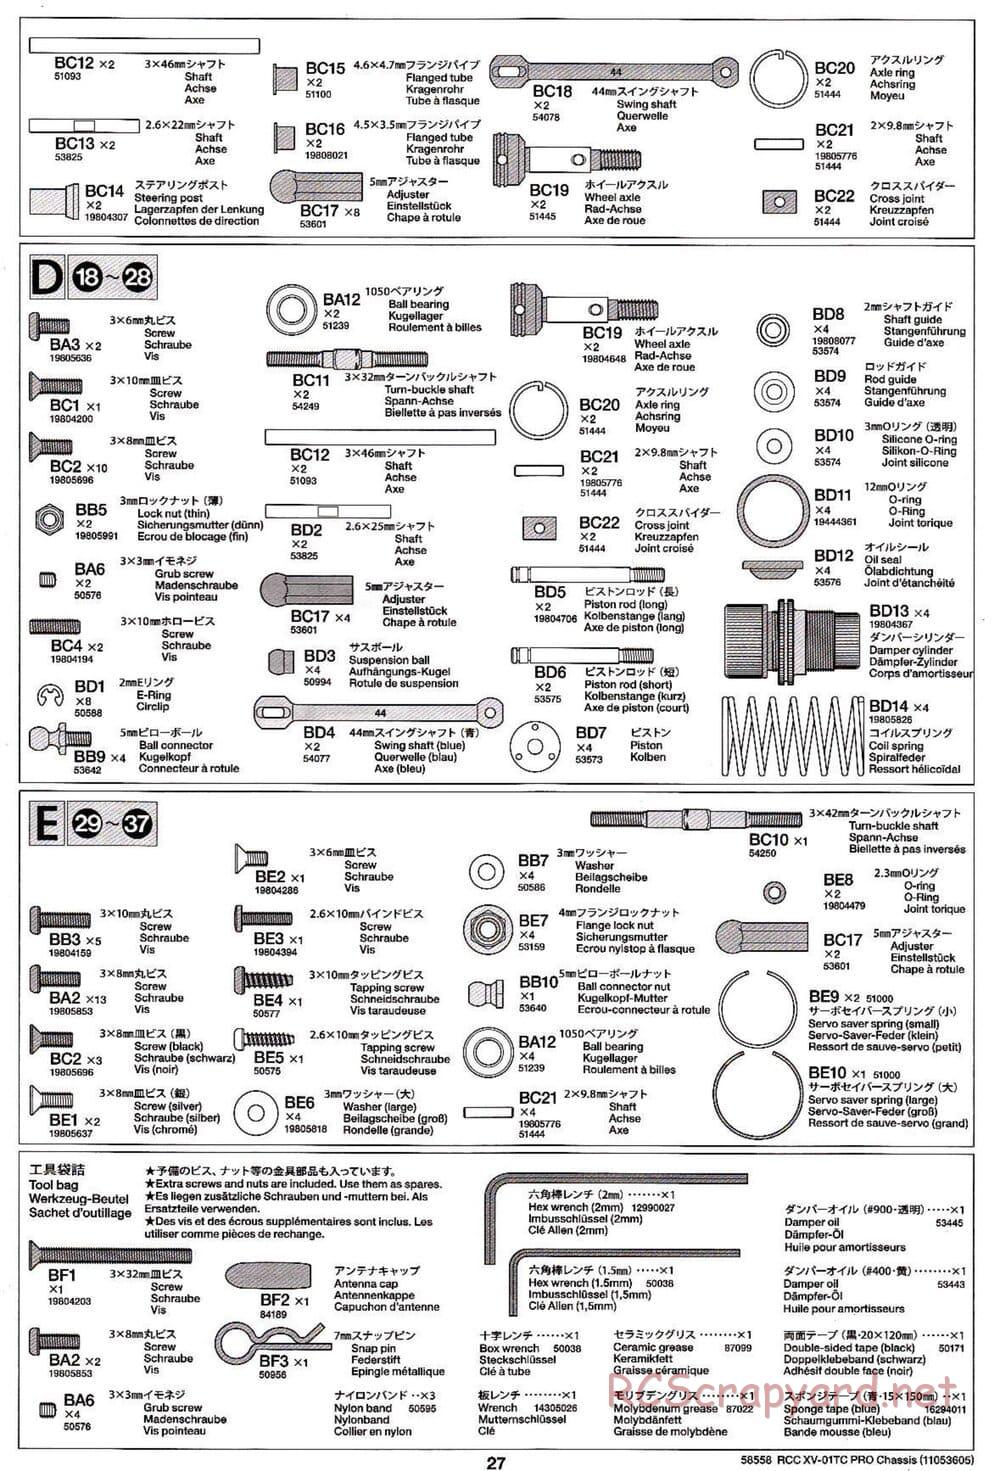 Tamiya - XV-01TC Chassis - Manual - Page 27